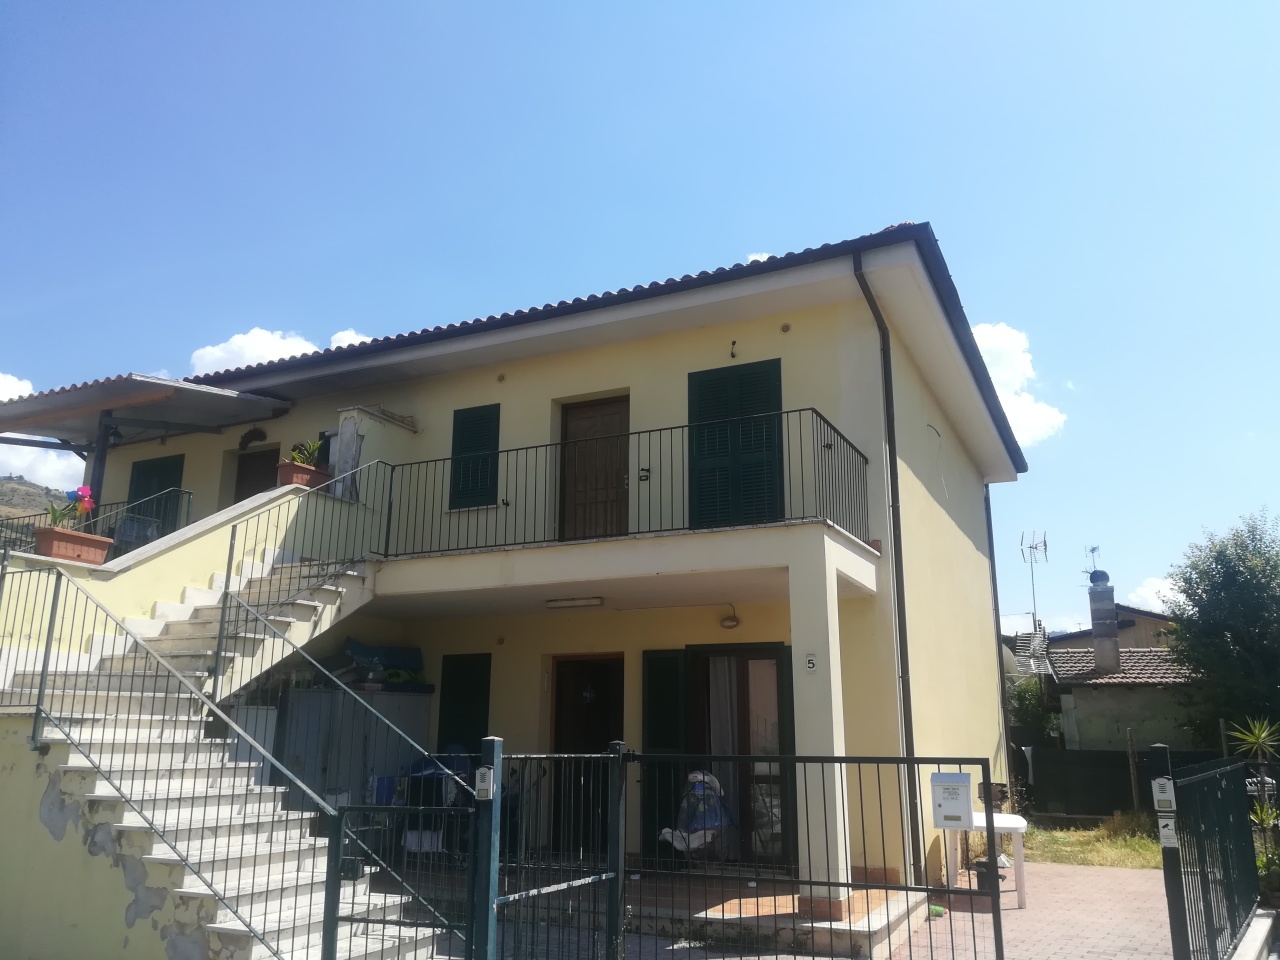 Appartamento in vendita a Palestrina, 3 locali, prezzo € 93.000 | CambioCasa.it